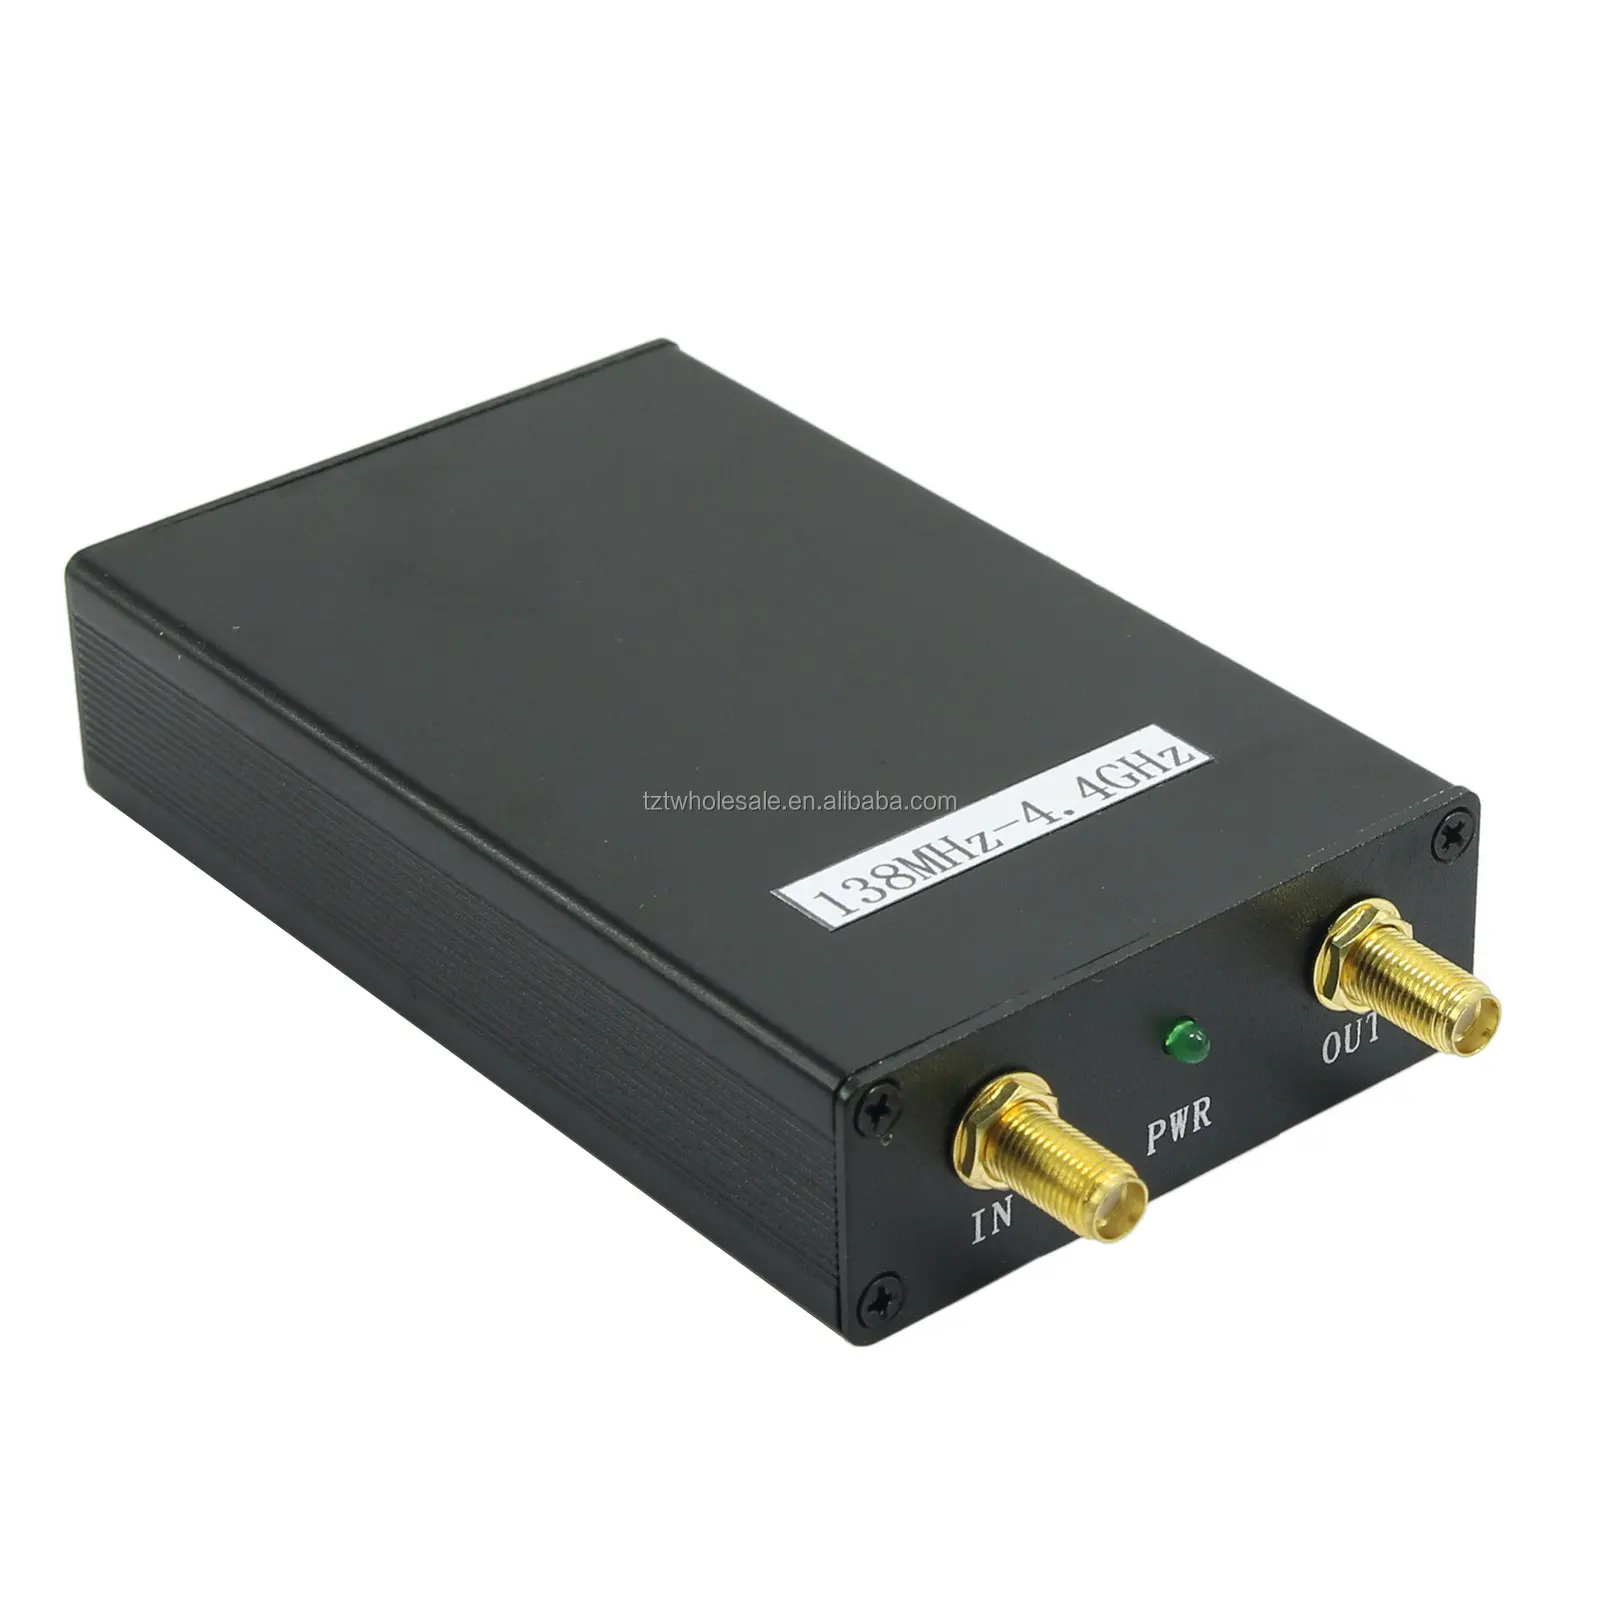 New 138MHz-4.4GHz 4.4G USB SMA Source/Signal Generator/Simple Spectrum Analyzer 